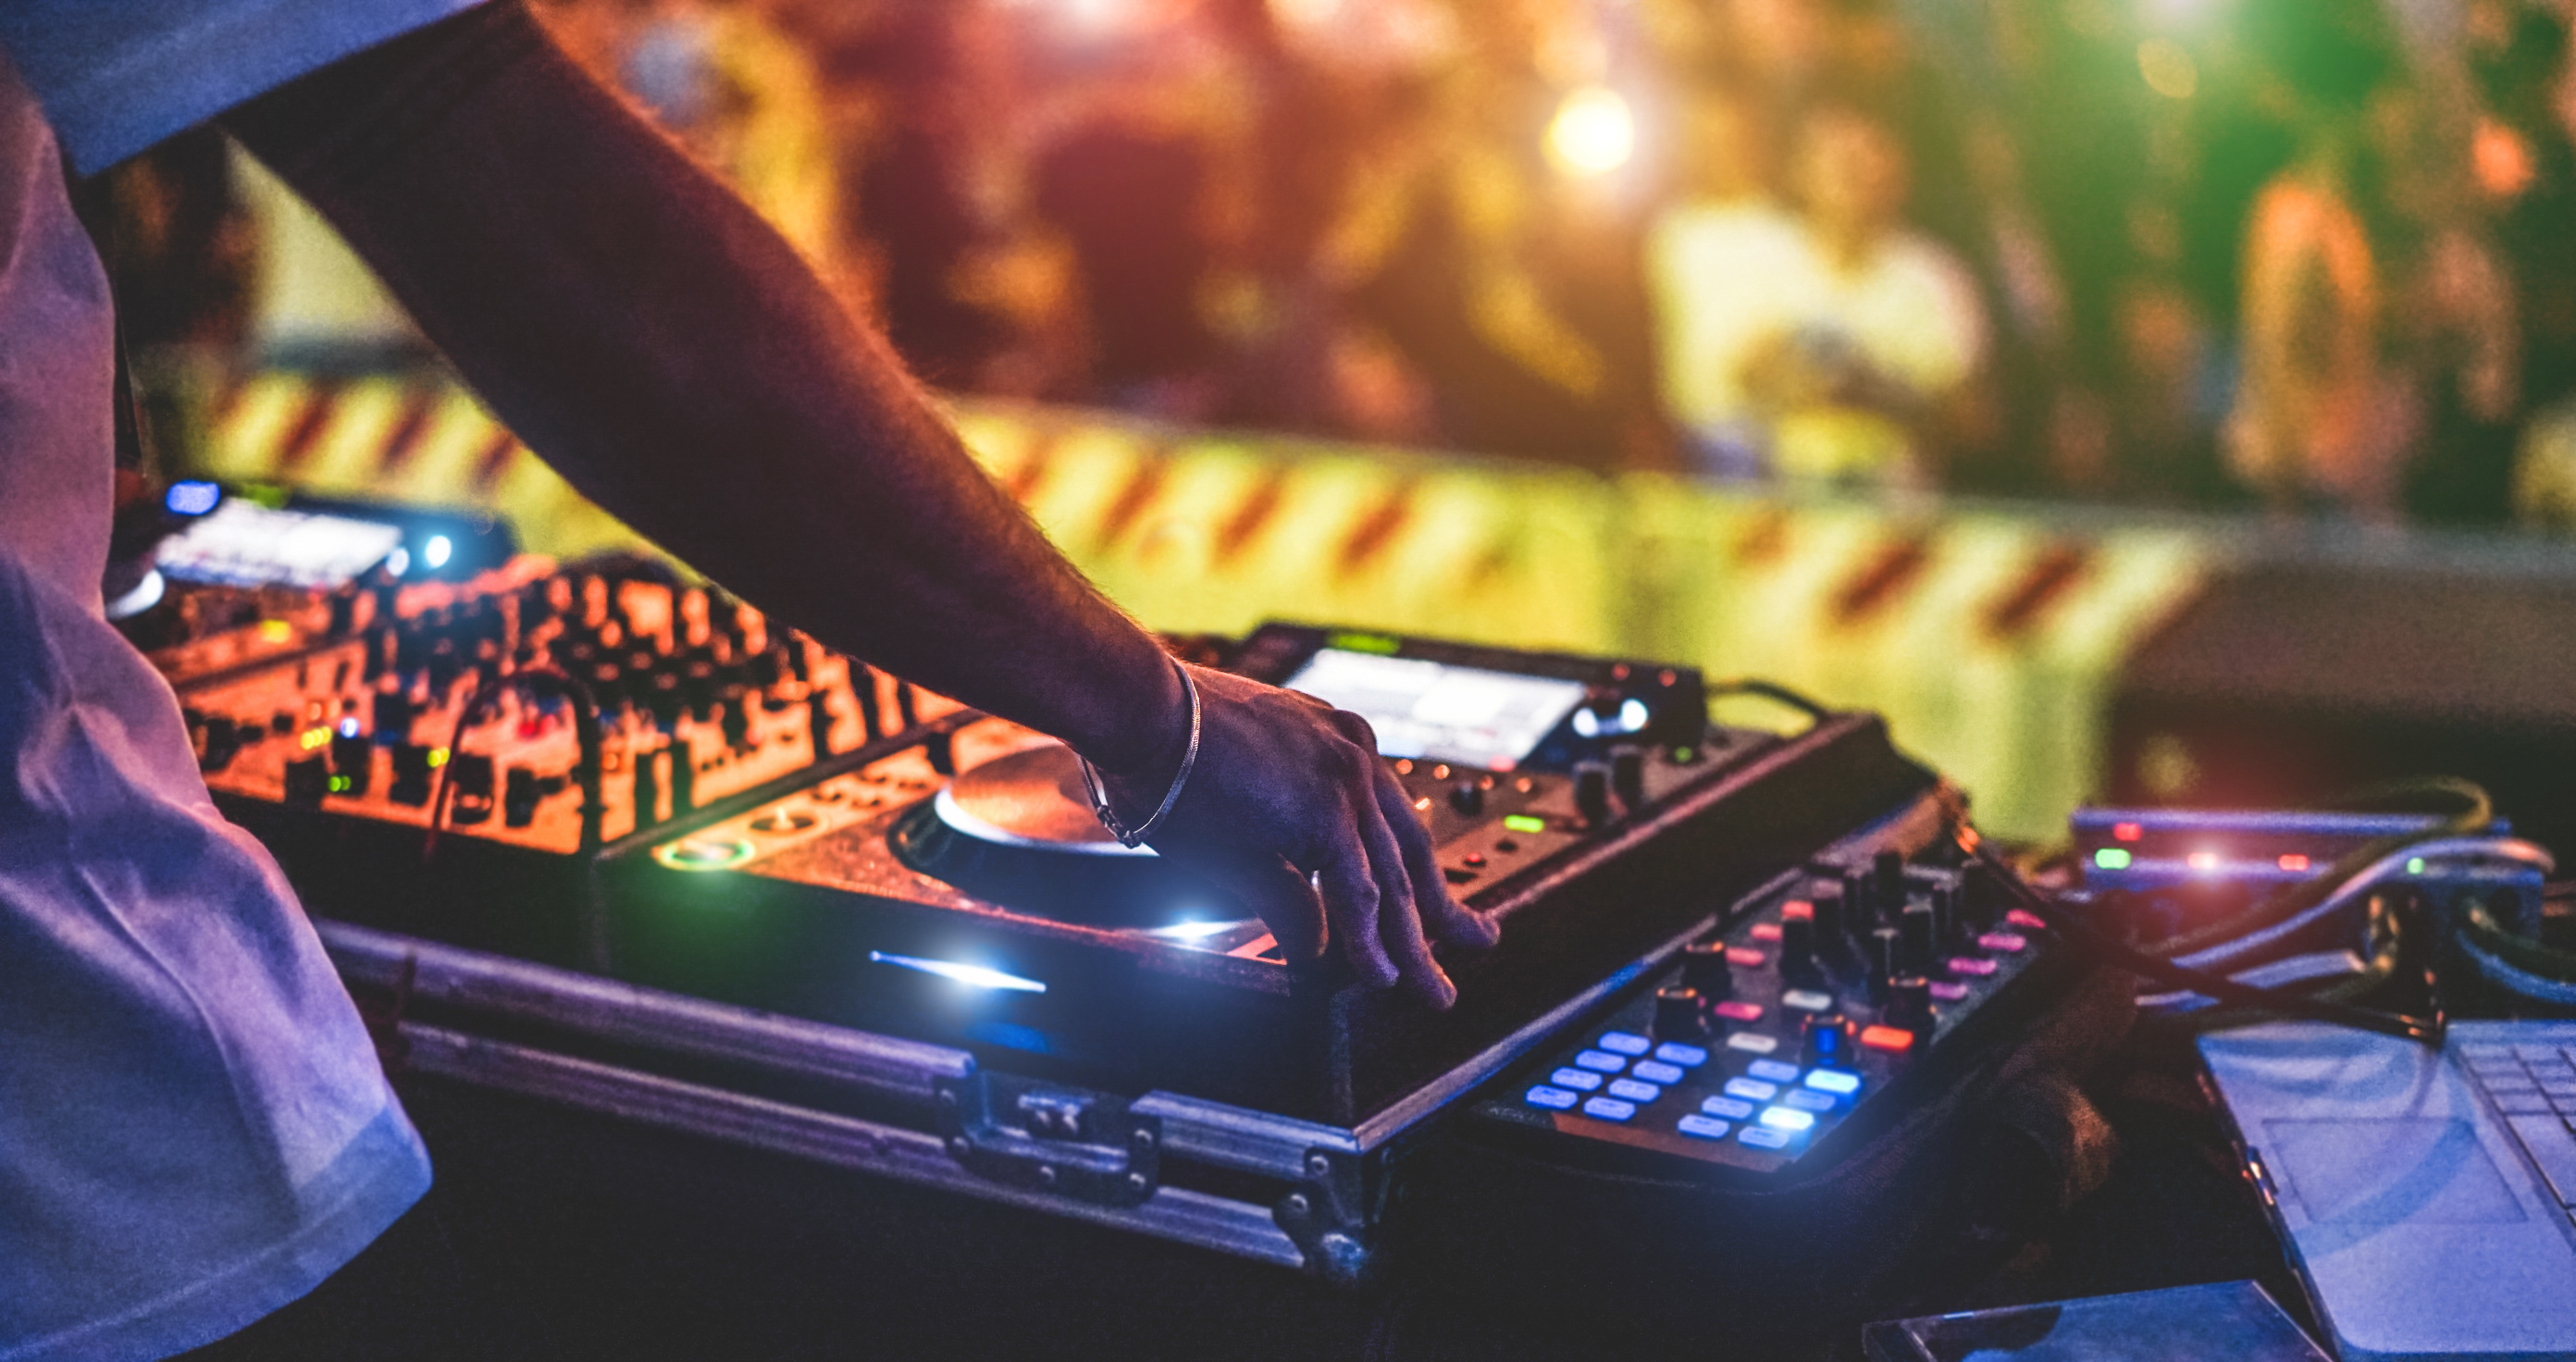   Kein Einzelfall | Leipziger DJ wegen sexualisierter Gewalt angezeigt  